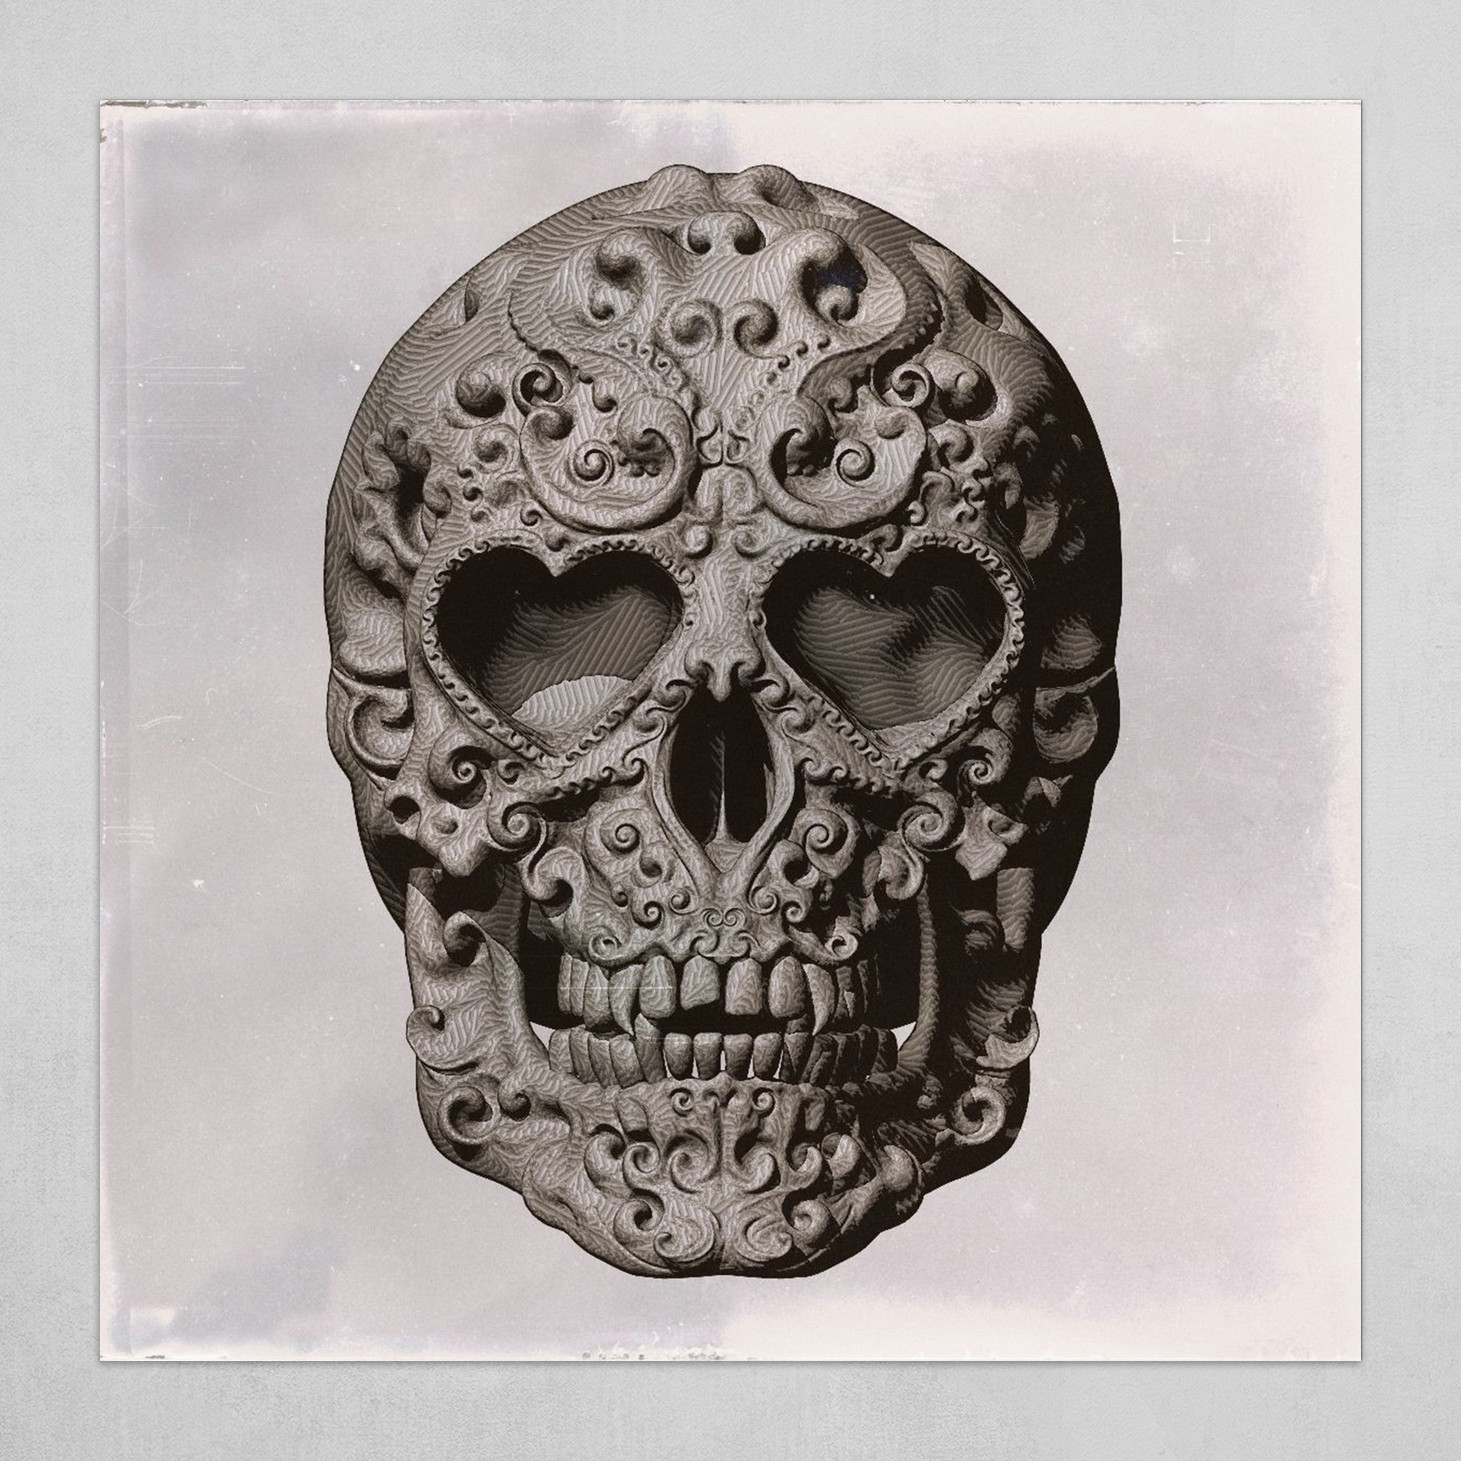 Mexican Skull Calavera Day of the dead themed - no signature Sepia tone